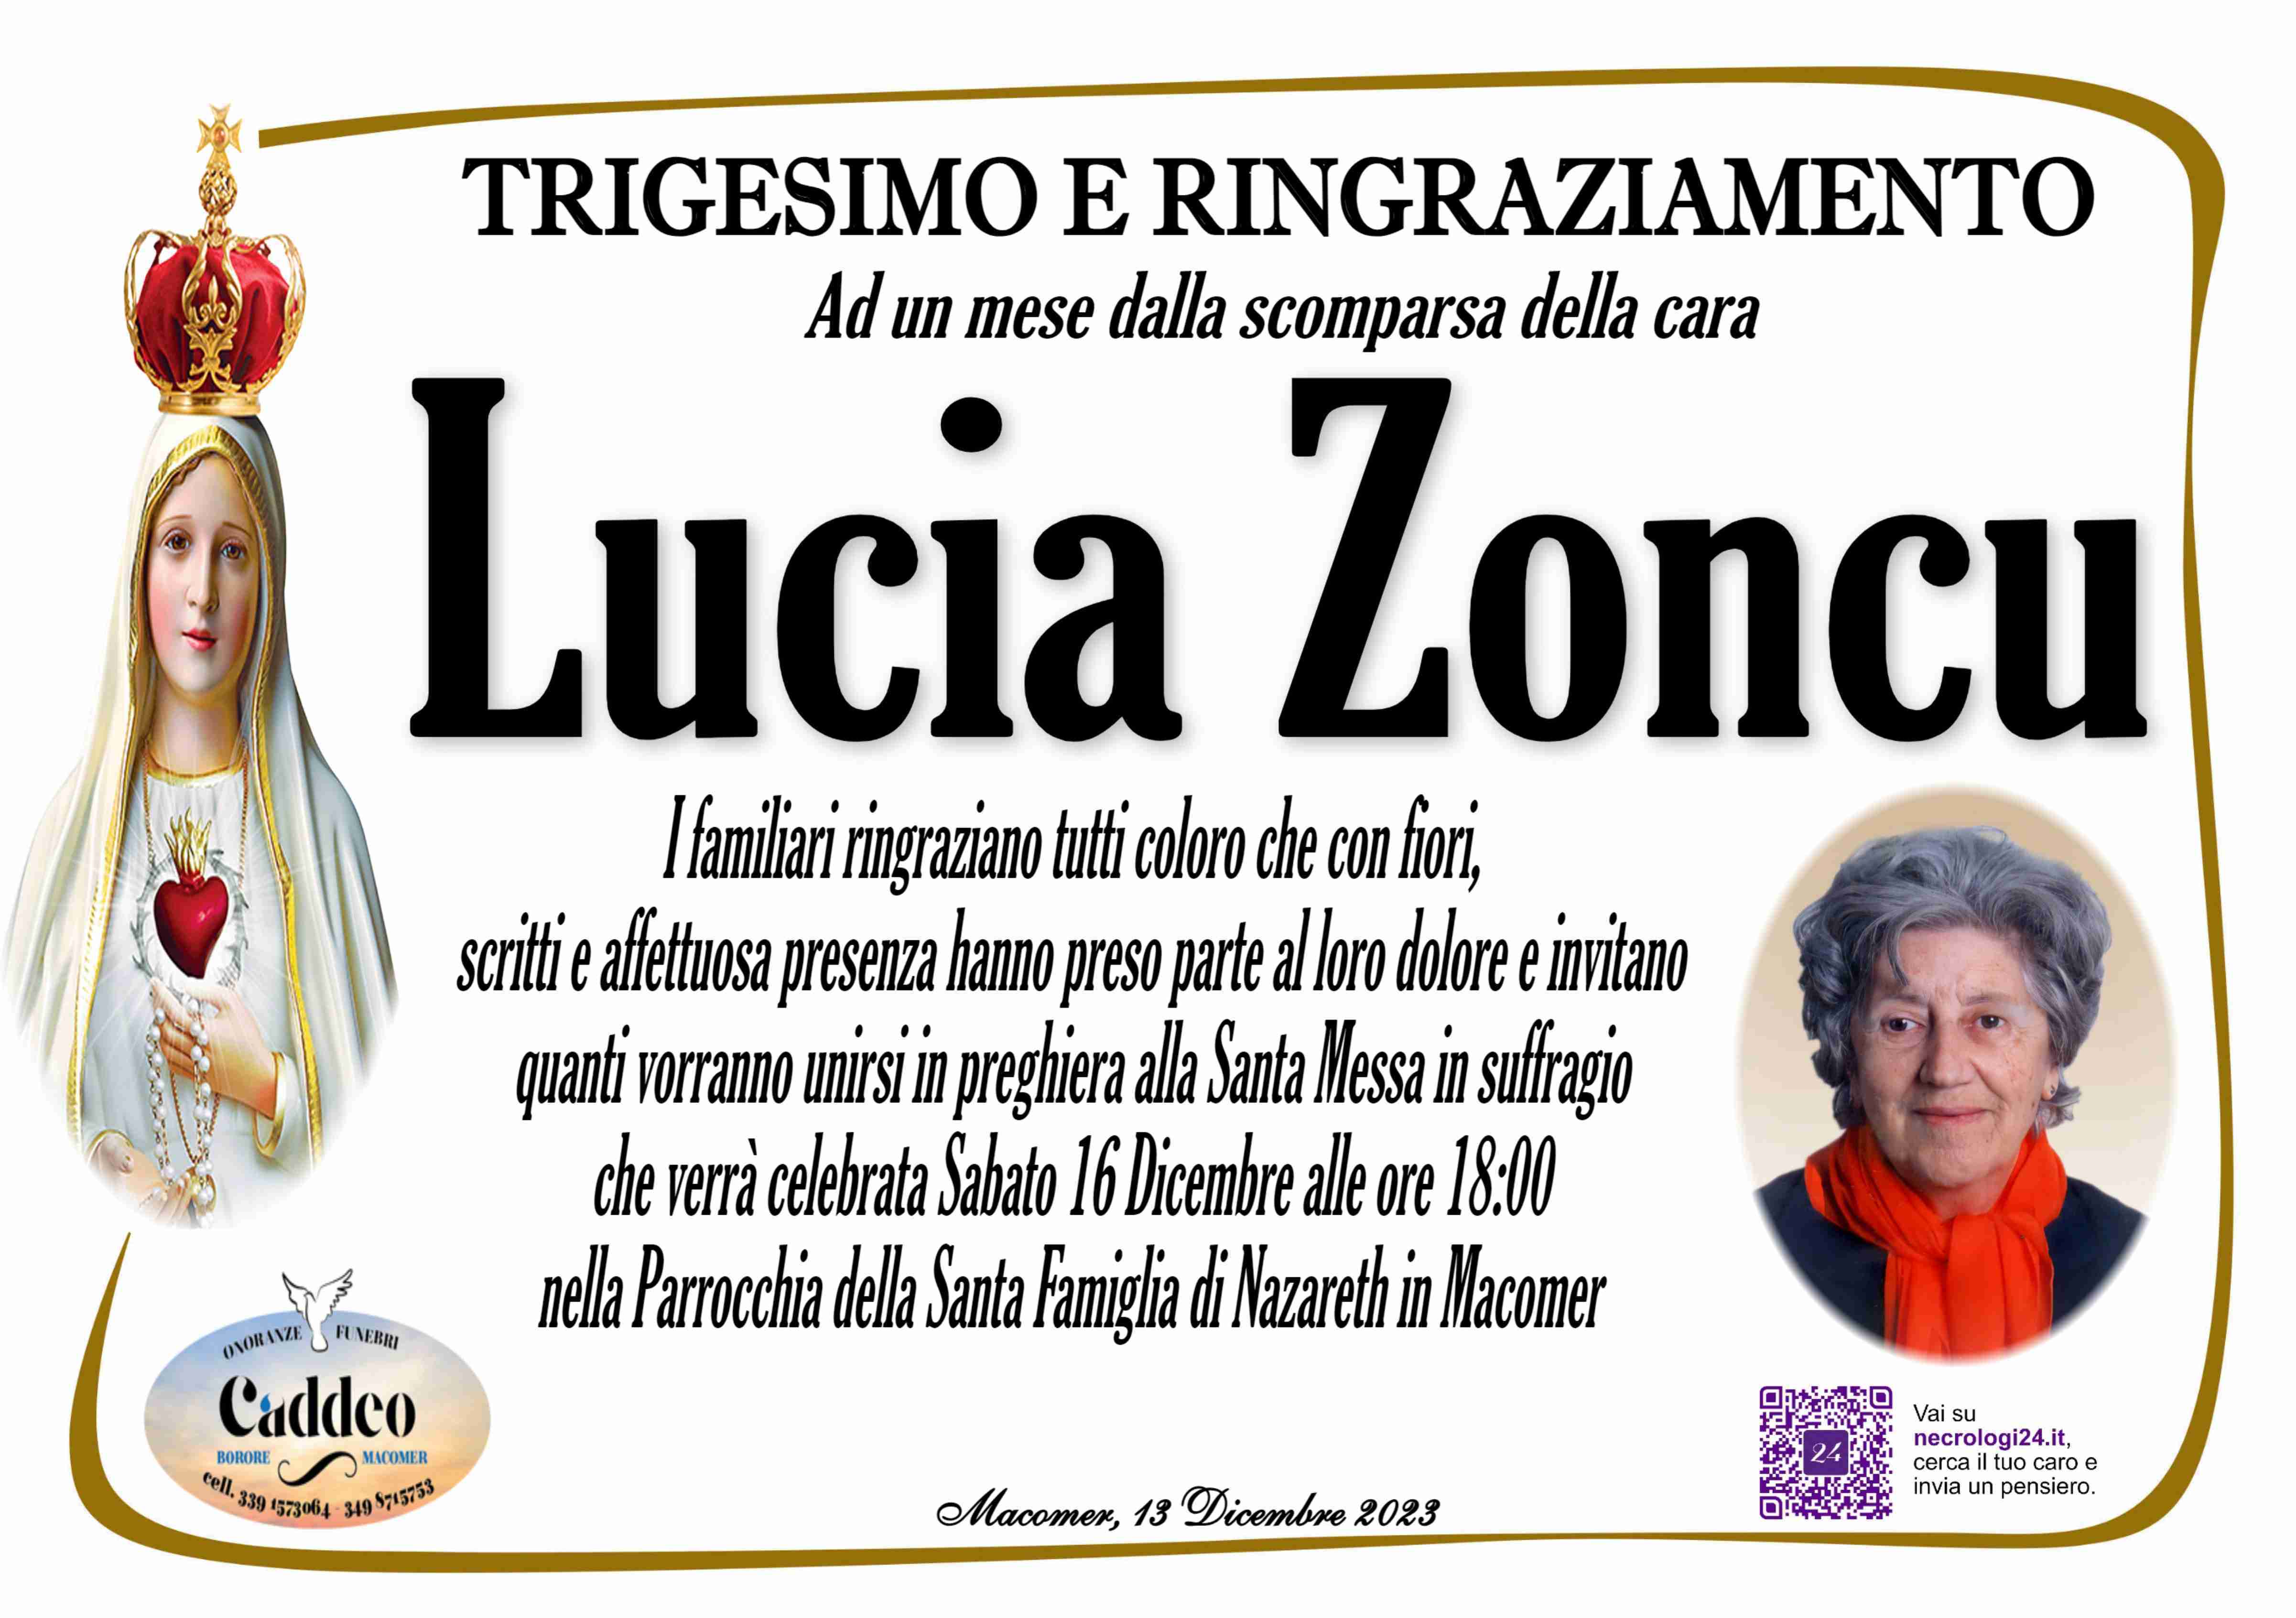 Lucia Zoncu